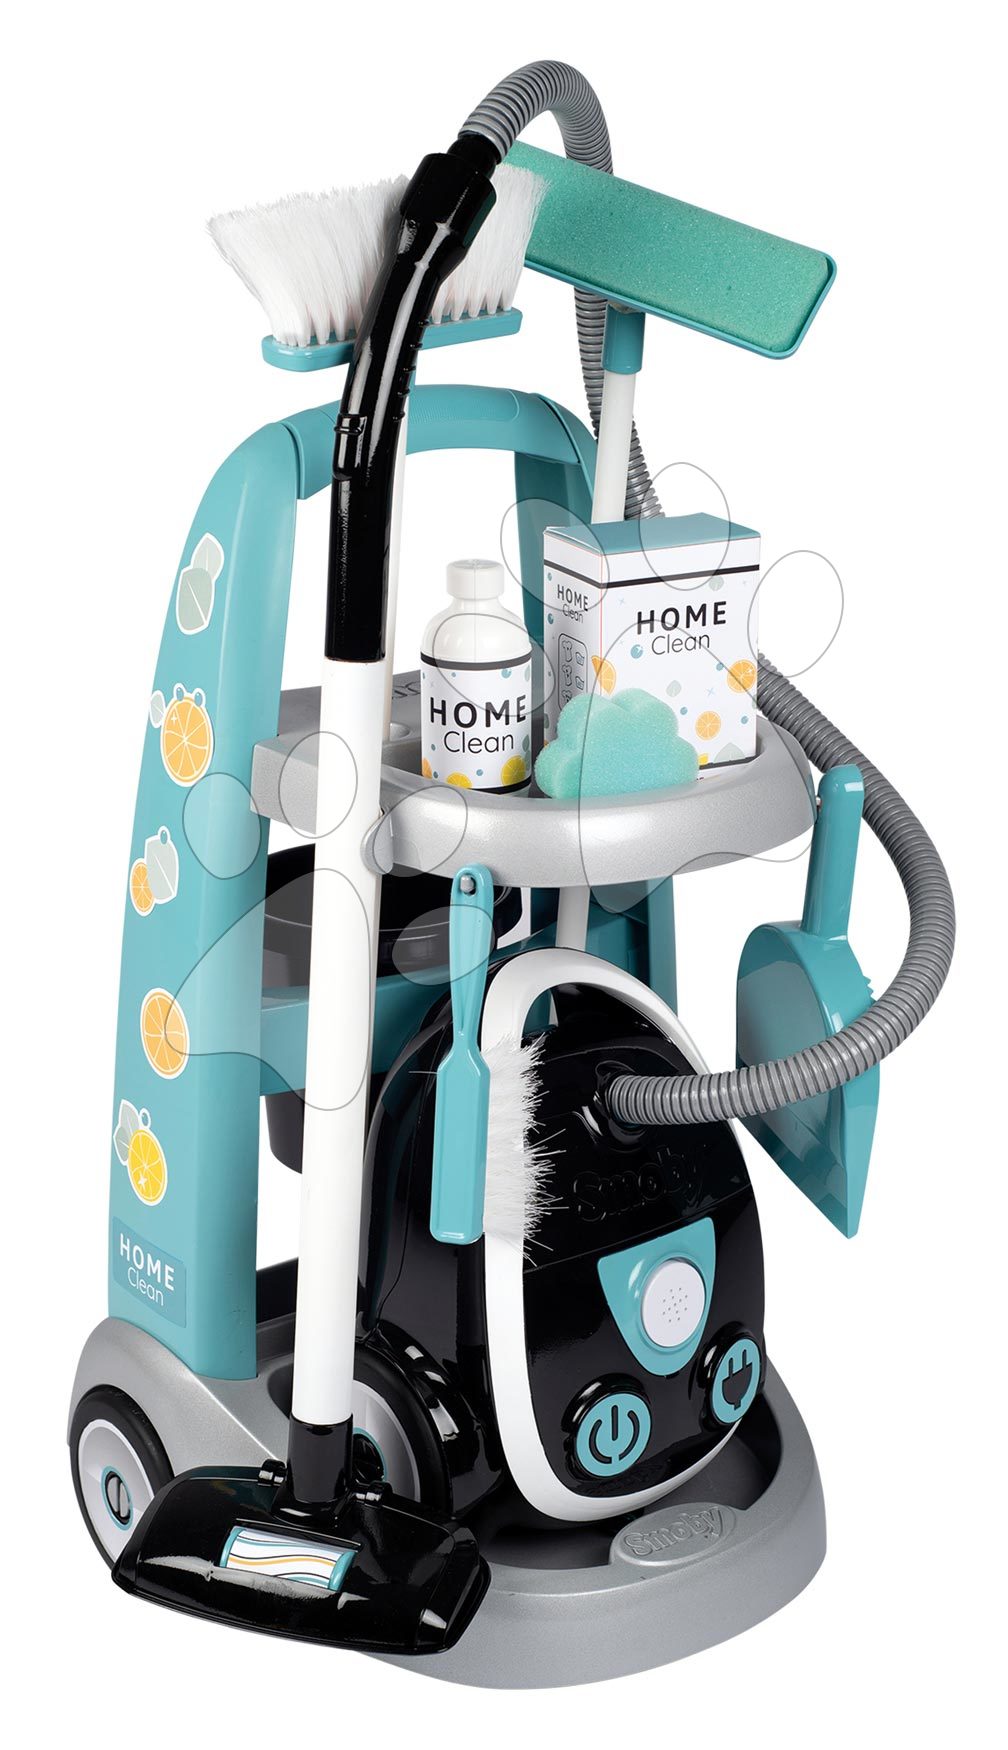 Igre kućanstva - Kolica za čišćenje s elektroničkim usisavačem Cleaning Trolley Vacuum Cleaner Smoby s metlom i lopaticom i 9 dodataka